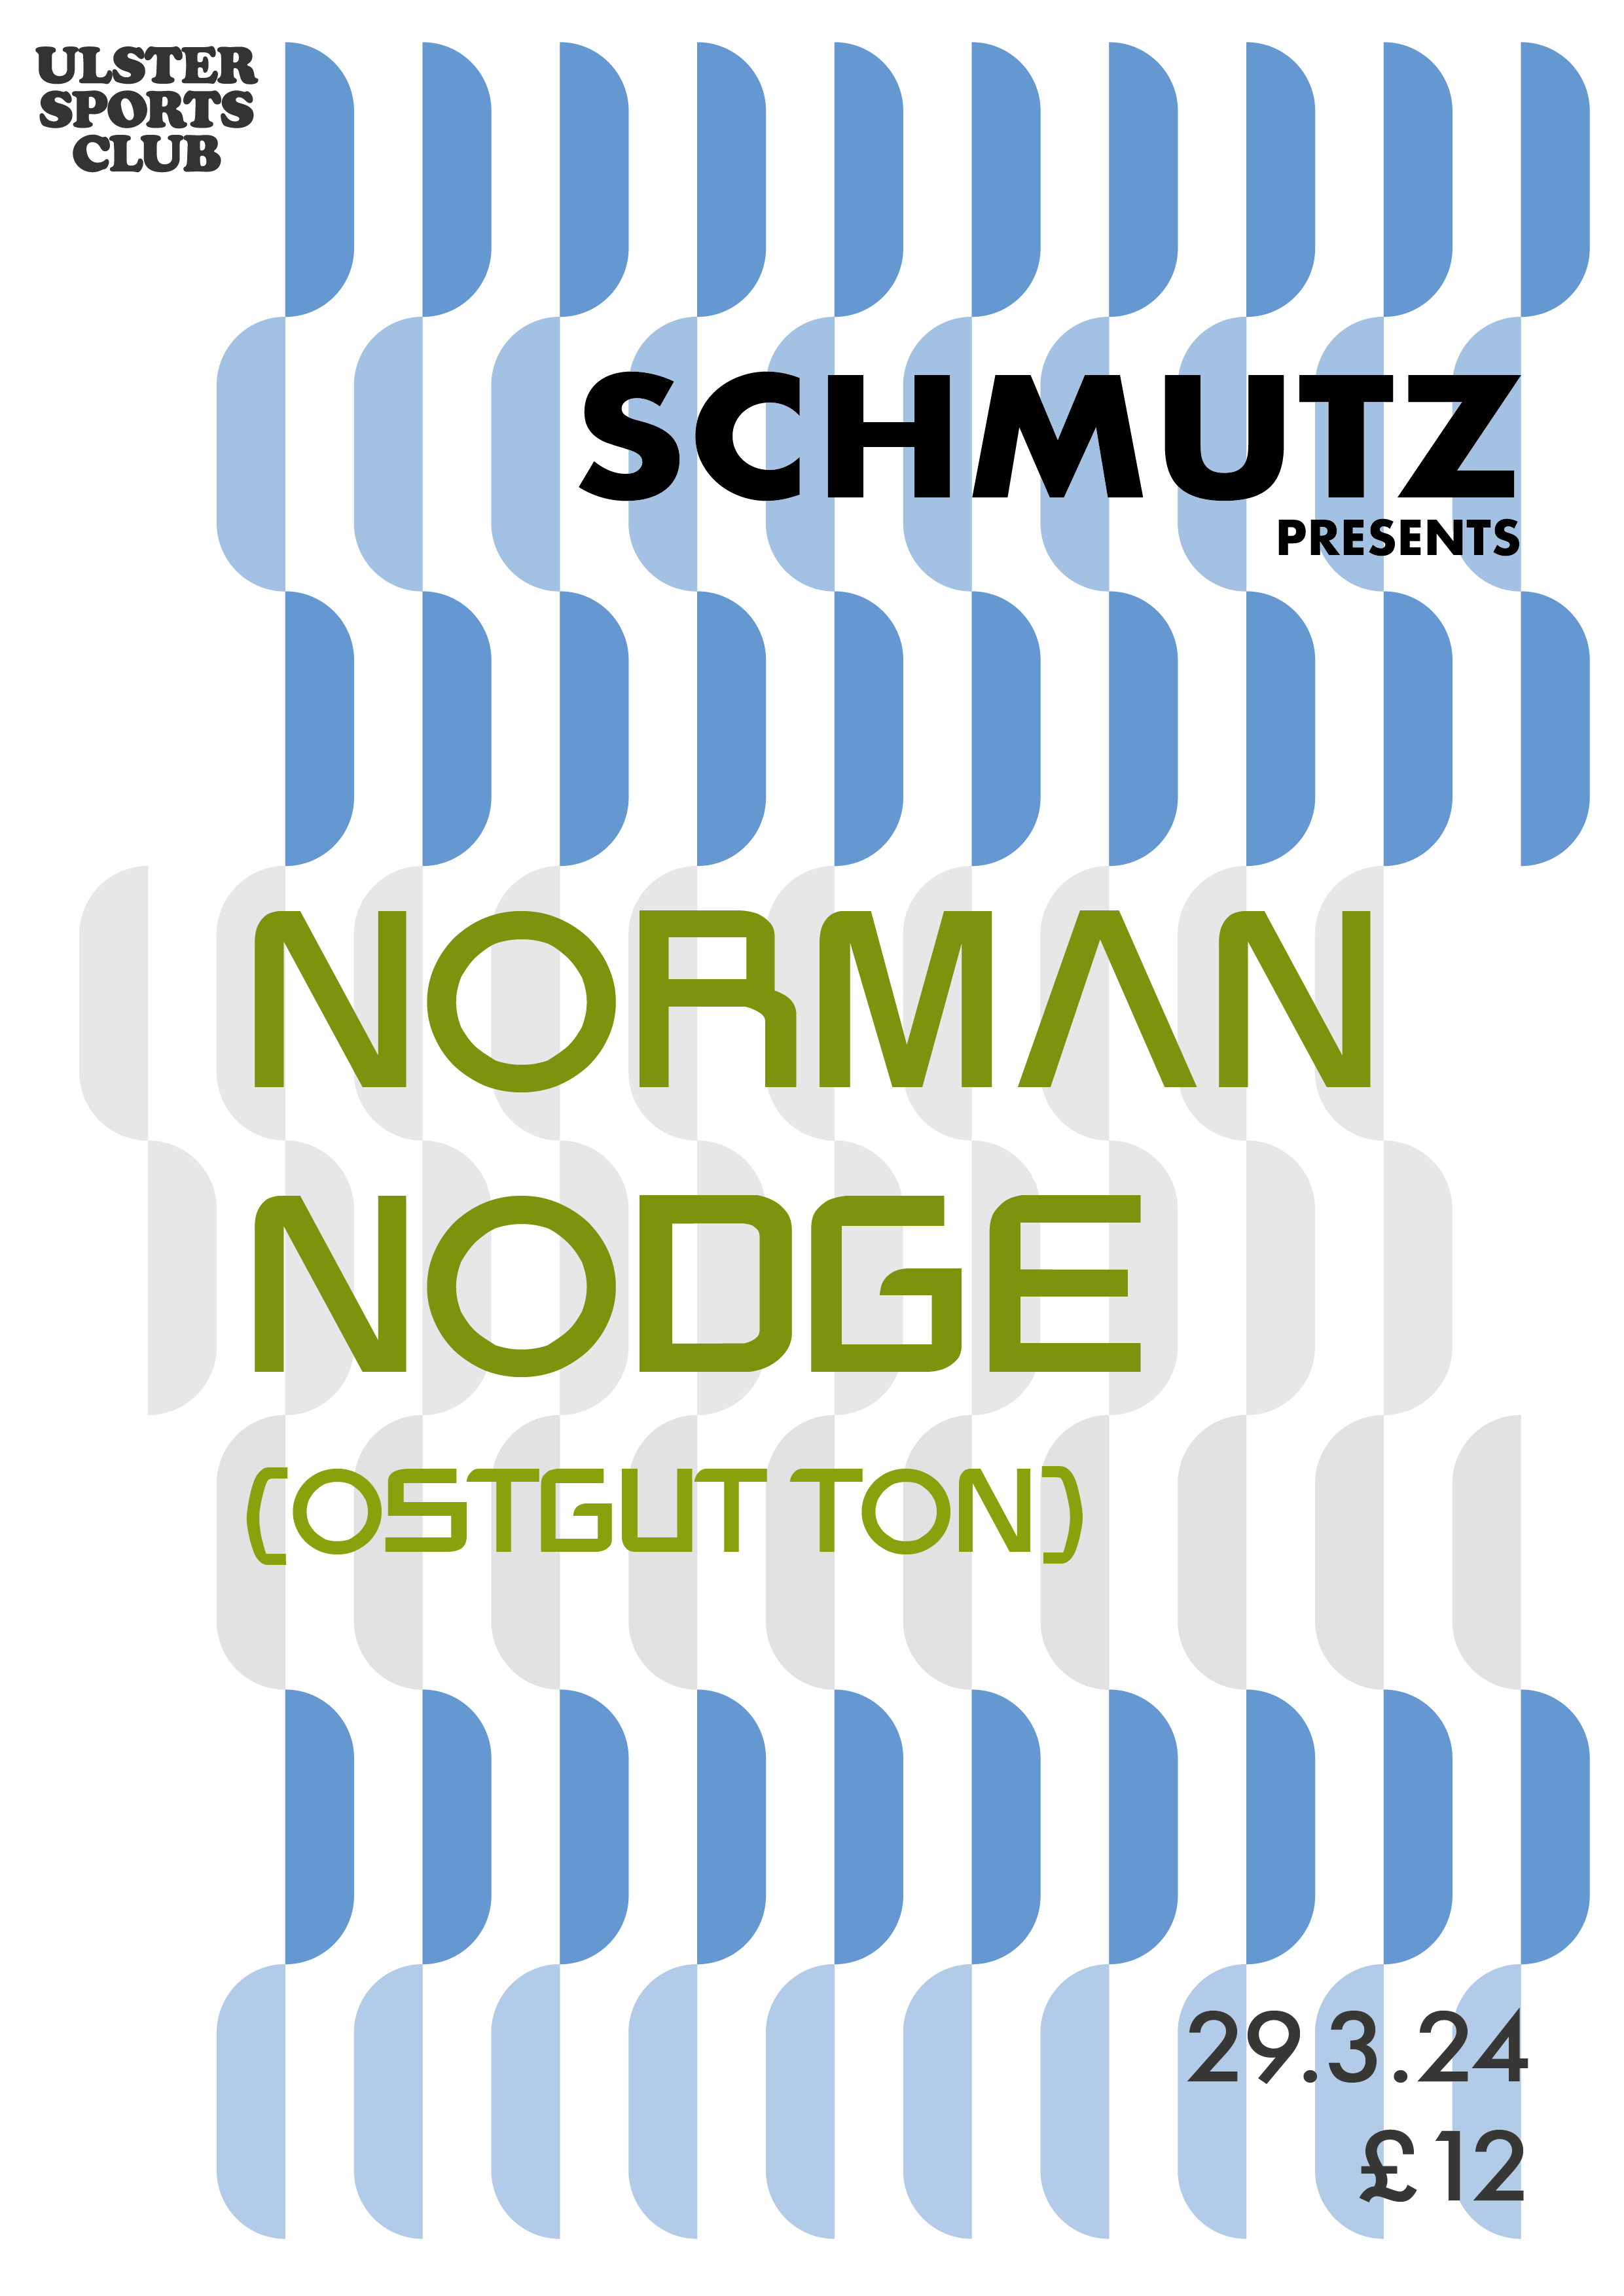 Schmutz Presents Norman Nodge (OstgutTon) - フライヤー裏